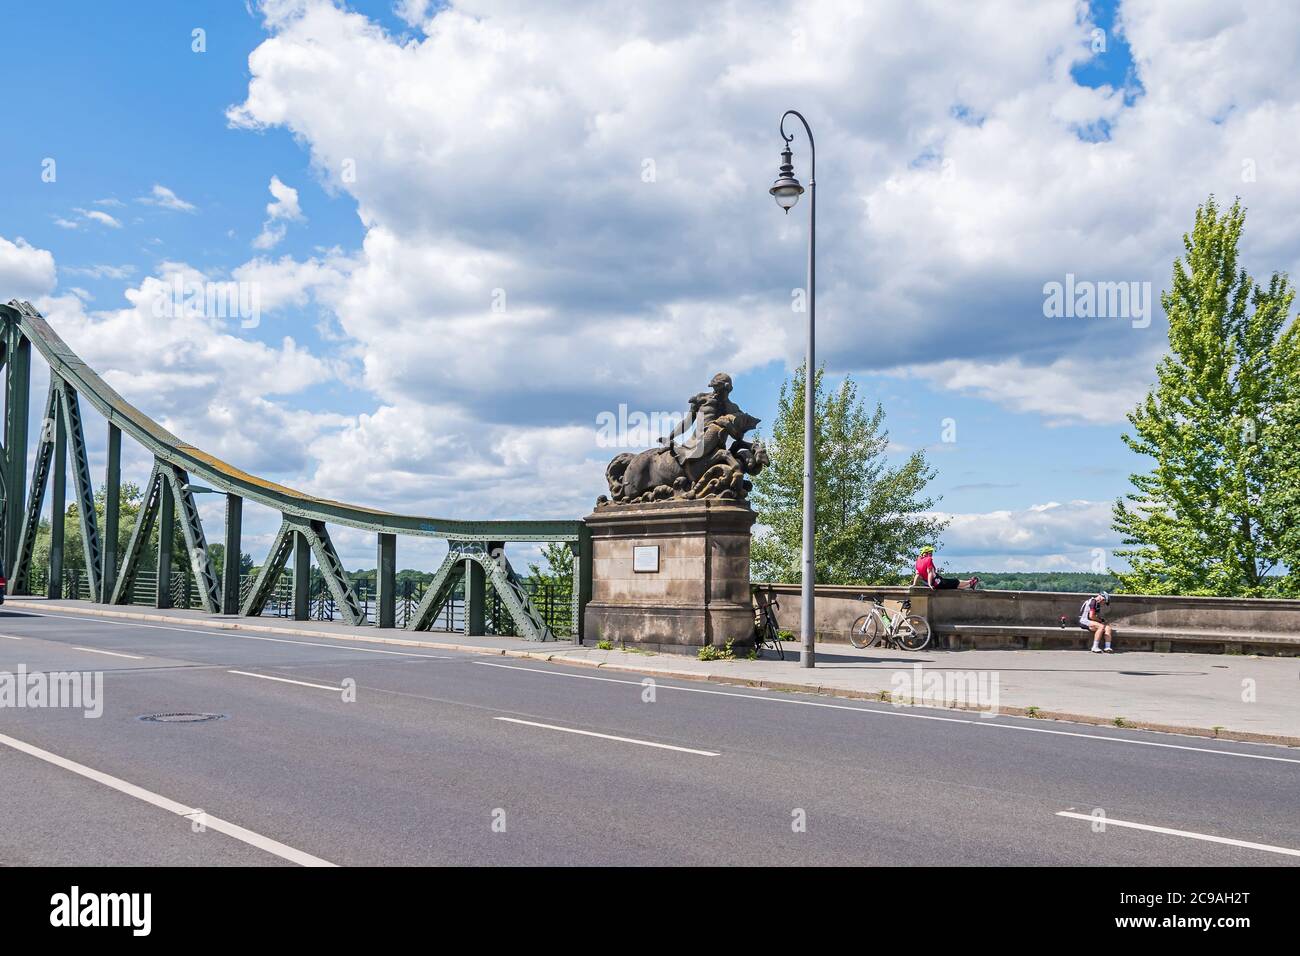 Potsdam, 12. Juli 2020: Glienicker Brücke, die berühmte Spionagebrücke, von Berlin aus gesehen, mit Centaur-Skulptur von Stephan Walter und zwei Bi Stockfoto